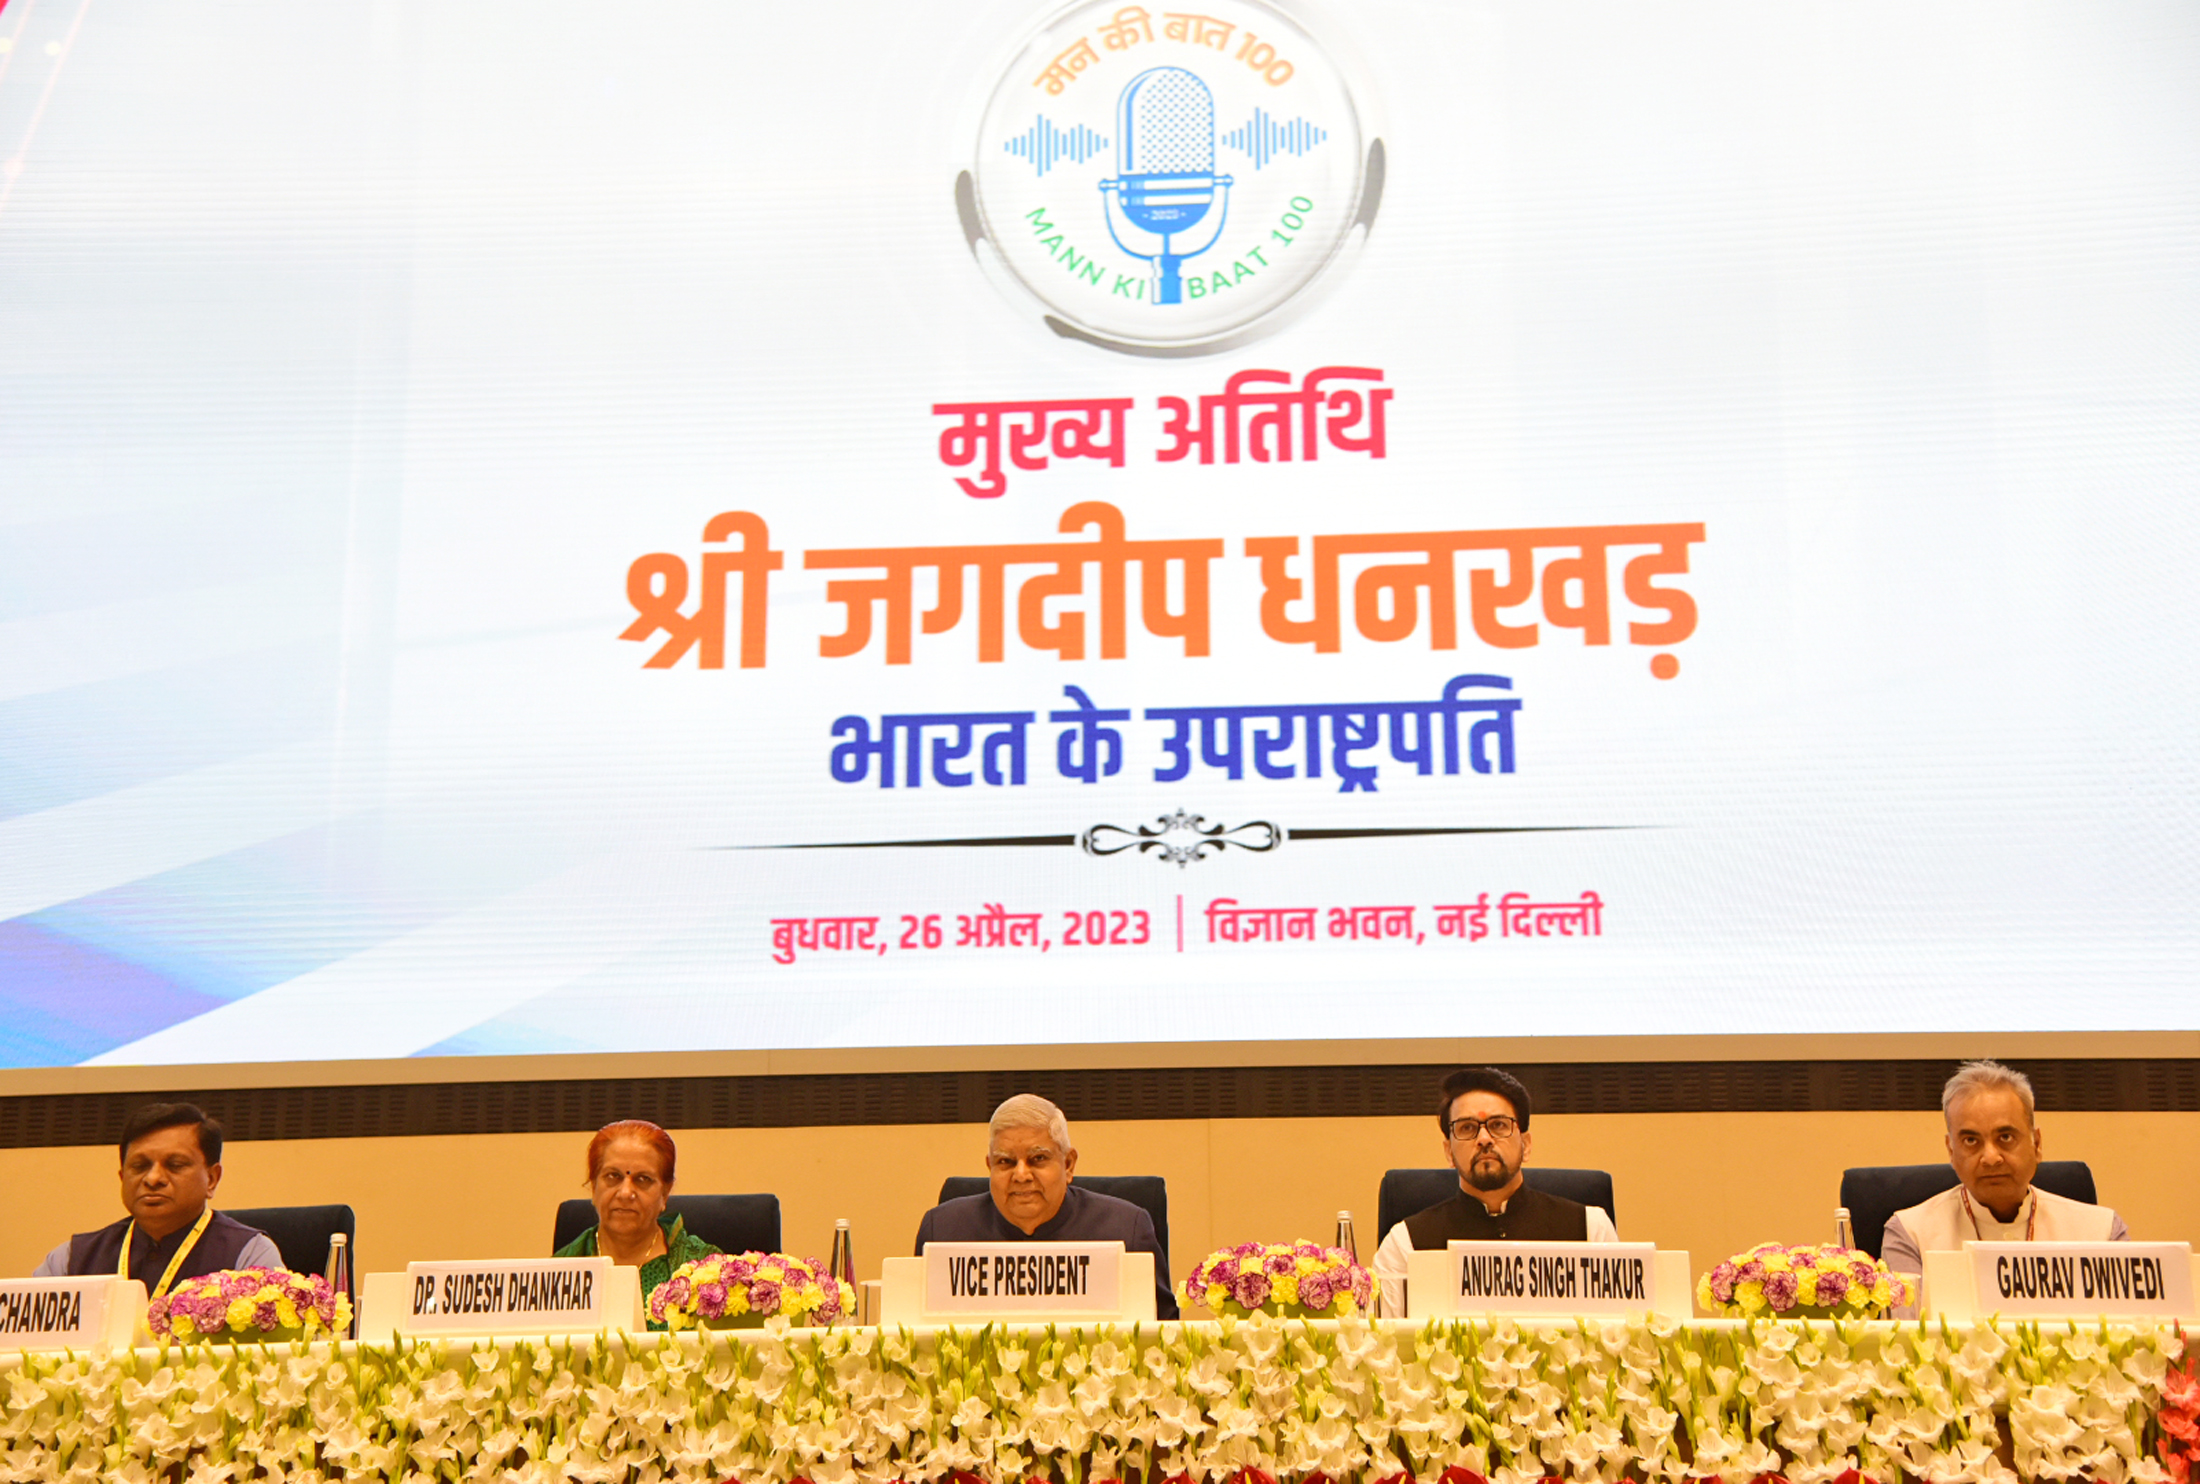 26 अप्रैल 2023 को विज्ञान भवन, नई दिल्ली में राष्ट्रीय सम्मेलन 'मन की बात@100' का  उद्घाटन  करते हुए उपराष्ट्रपति श्री जगदीप धनखड़ ।